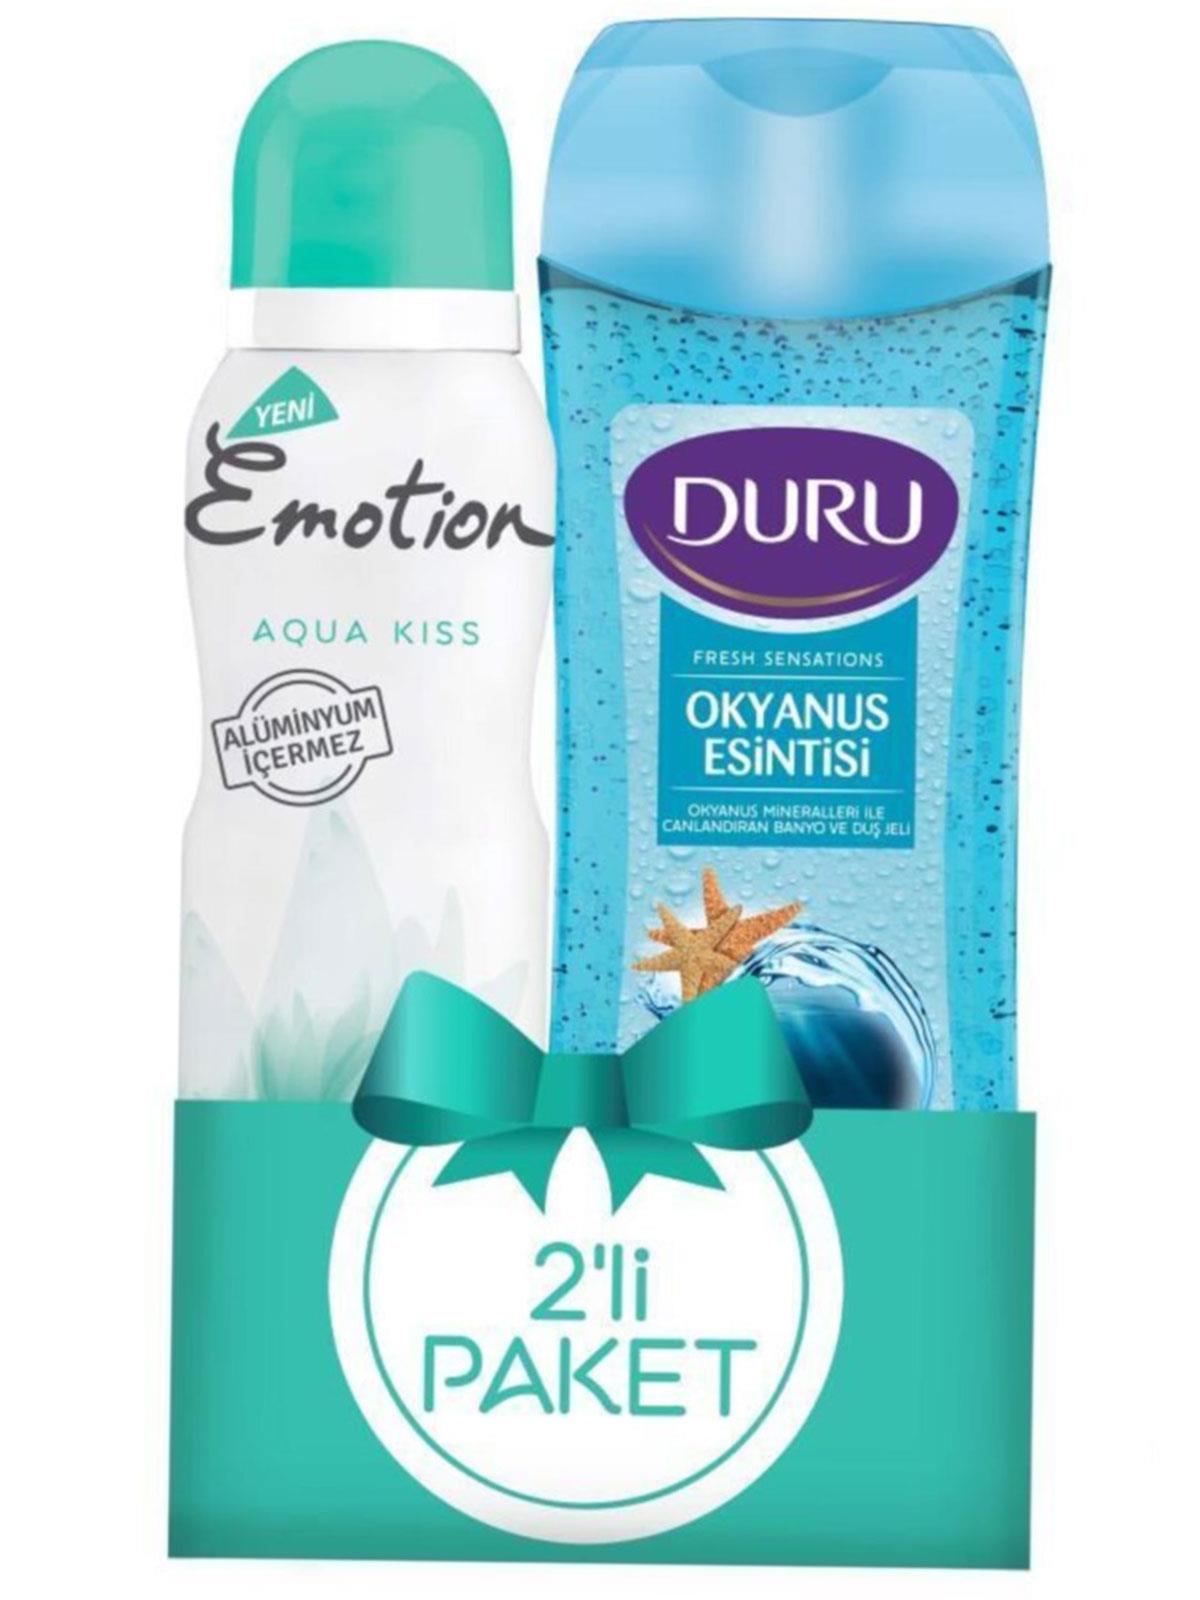 Duru Duş Jeli 250 ml + Emotion Aqua Kiss Deodorant 150 ml